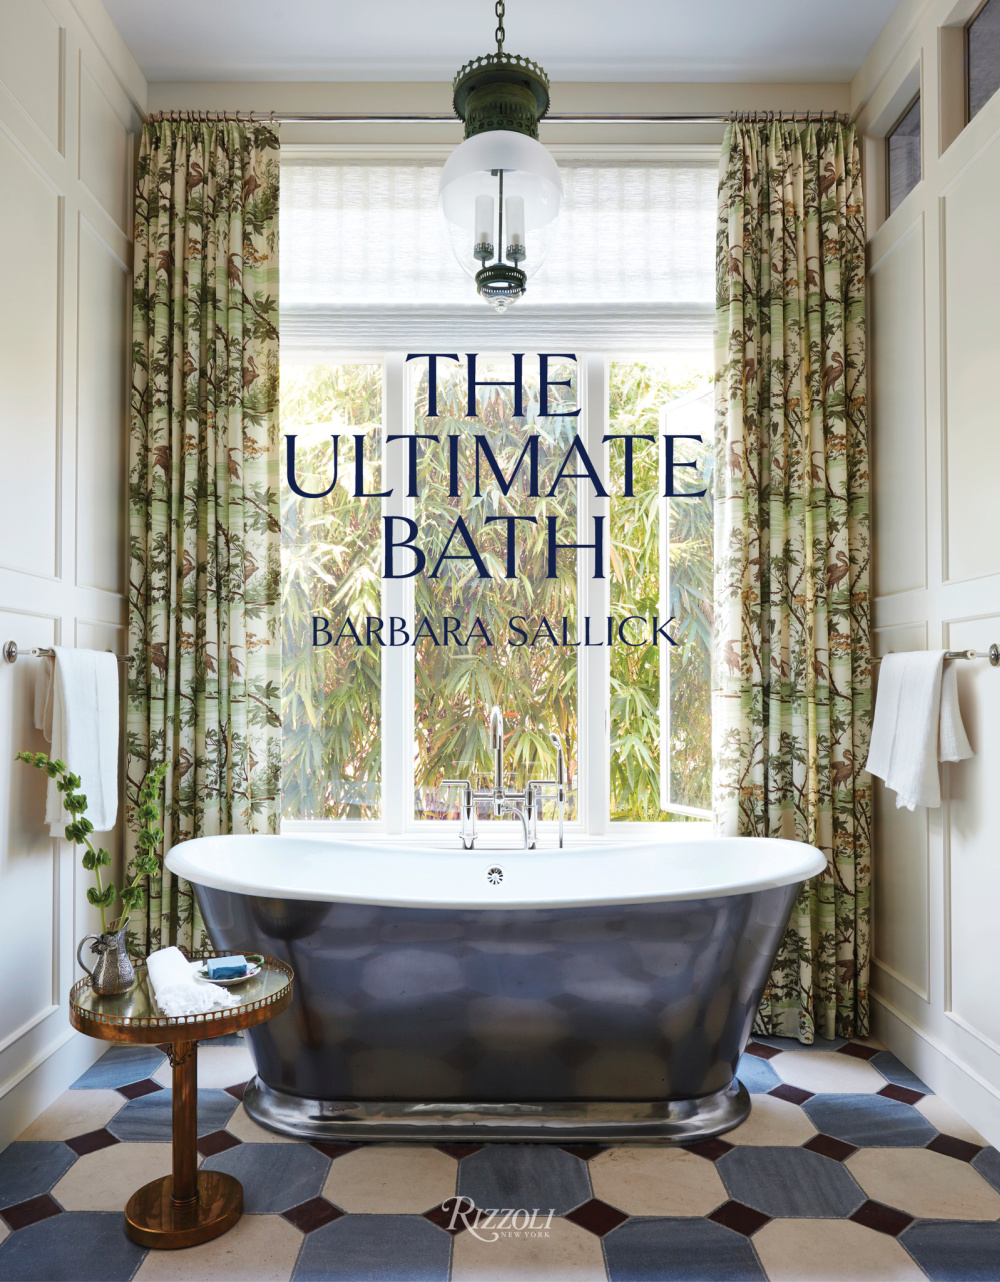 The Ultimate Bath by Barbara Sallick (Rizzoli, 2022) - book cover